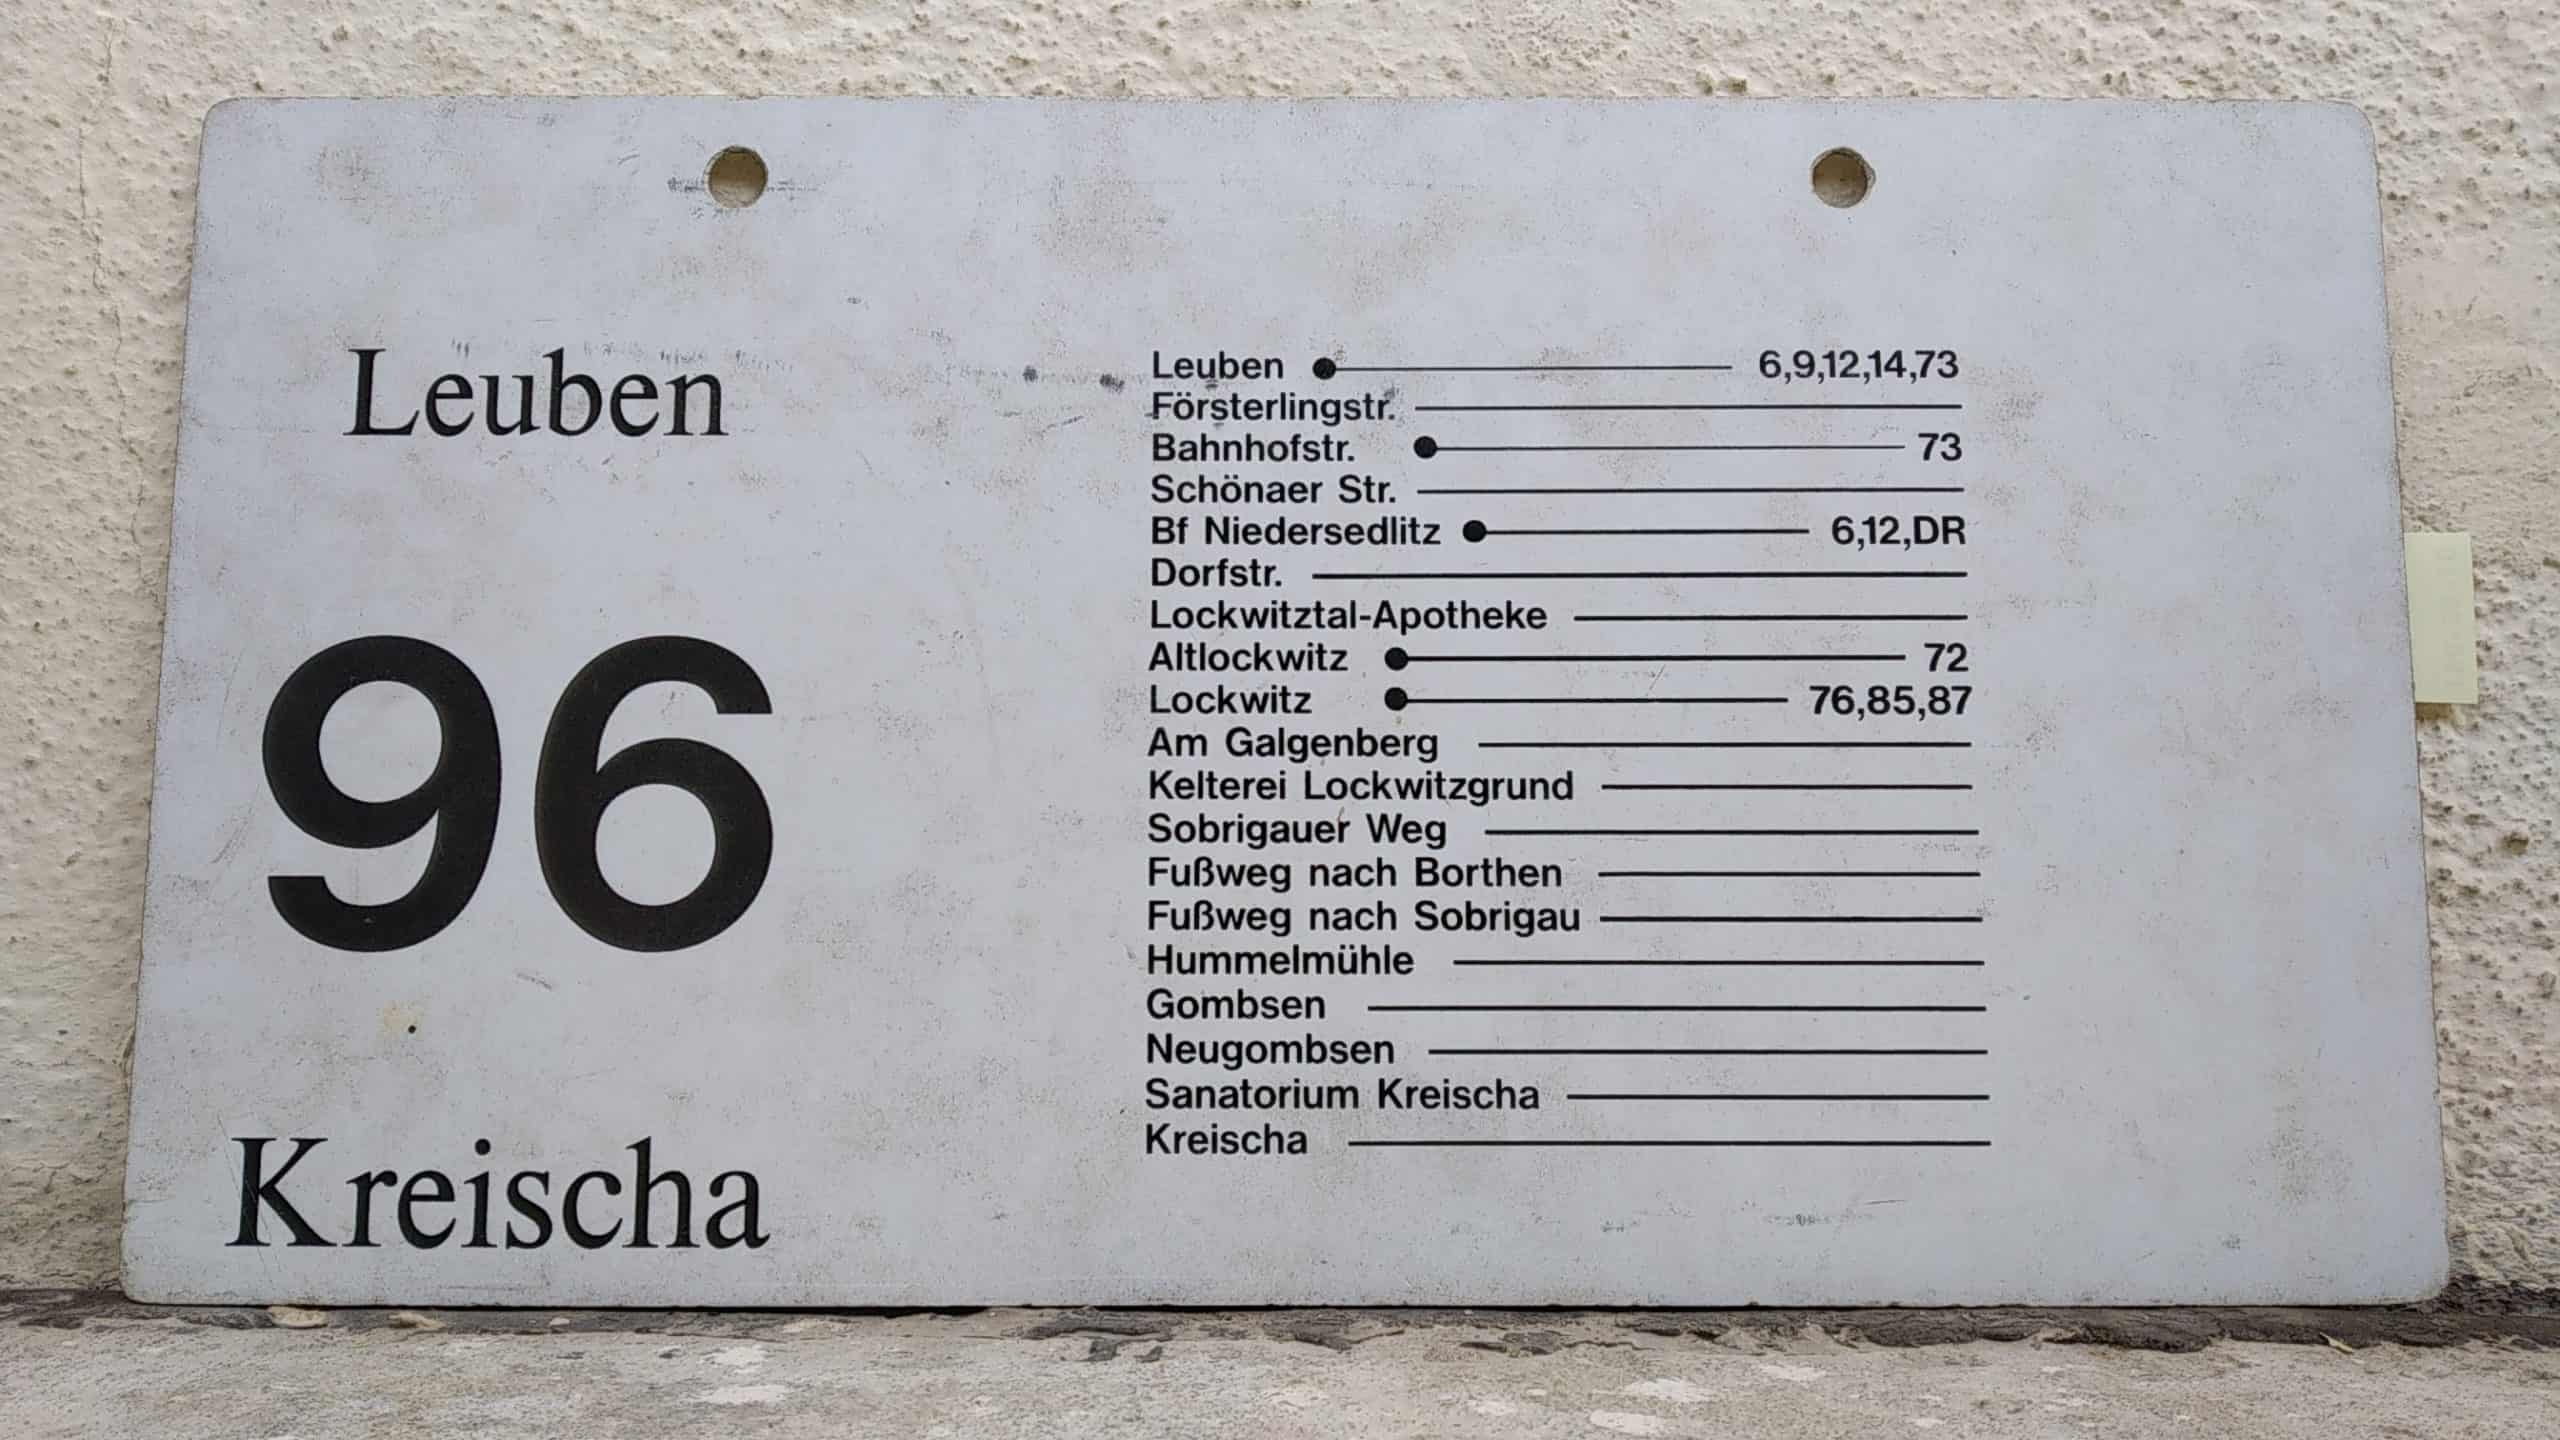 Ein seltenes Bus-Linienschild aus Dresden der Linie 96 von Leuben nach Kreischa #2